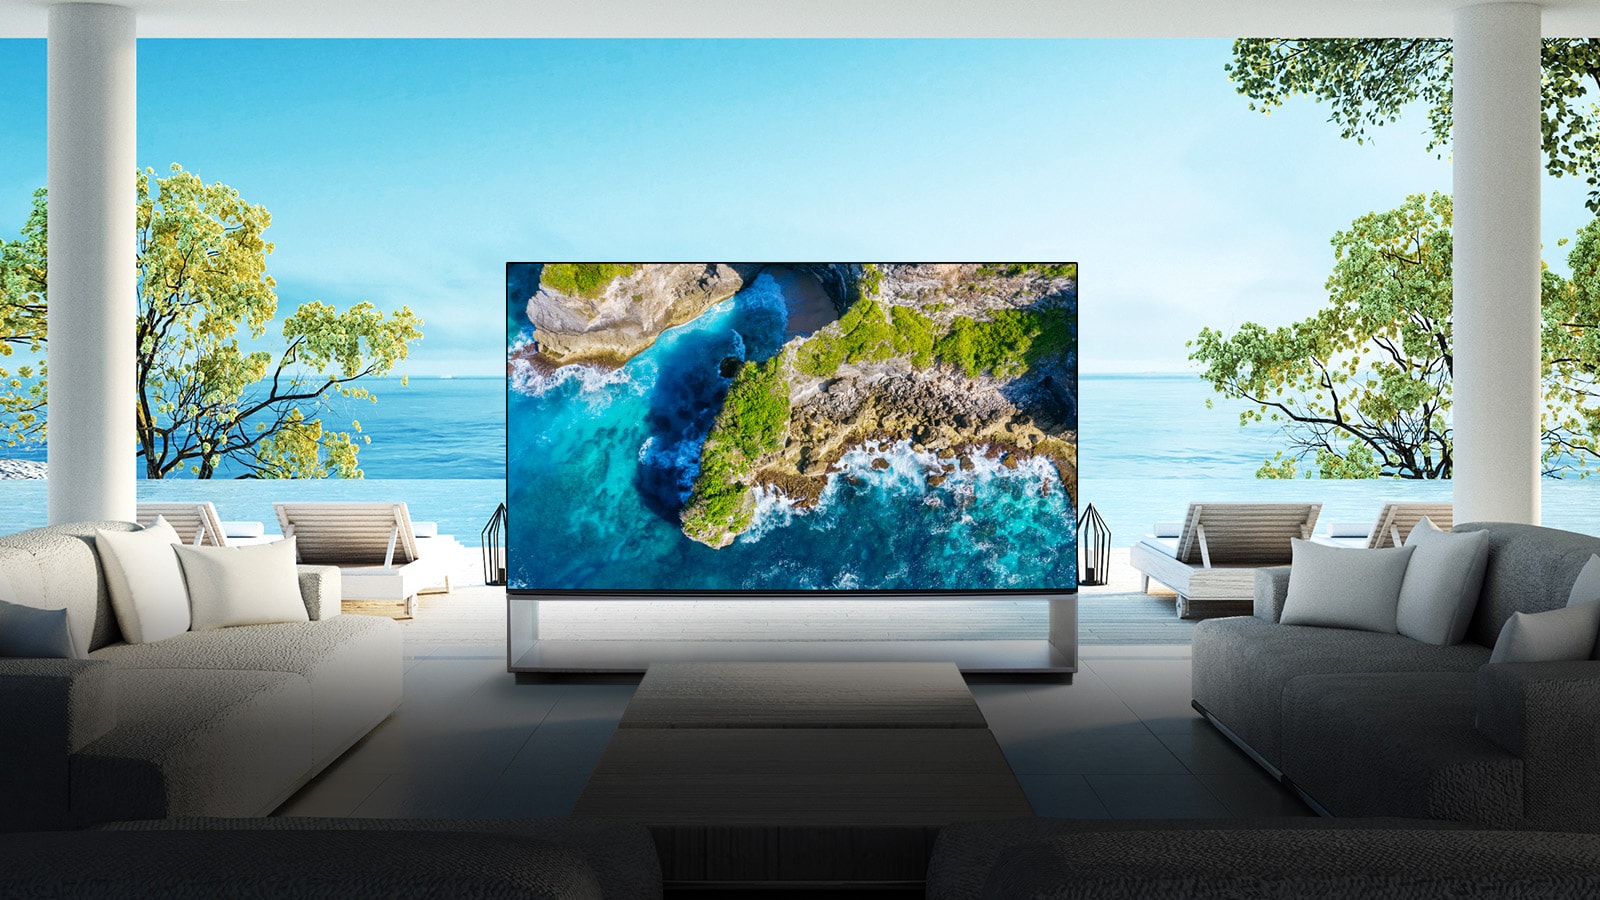 Televizor koji prikazuje prirodu iz vazduha u luksuznom kućnom okruženju